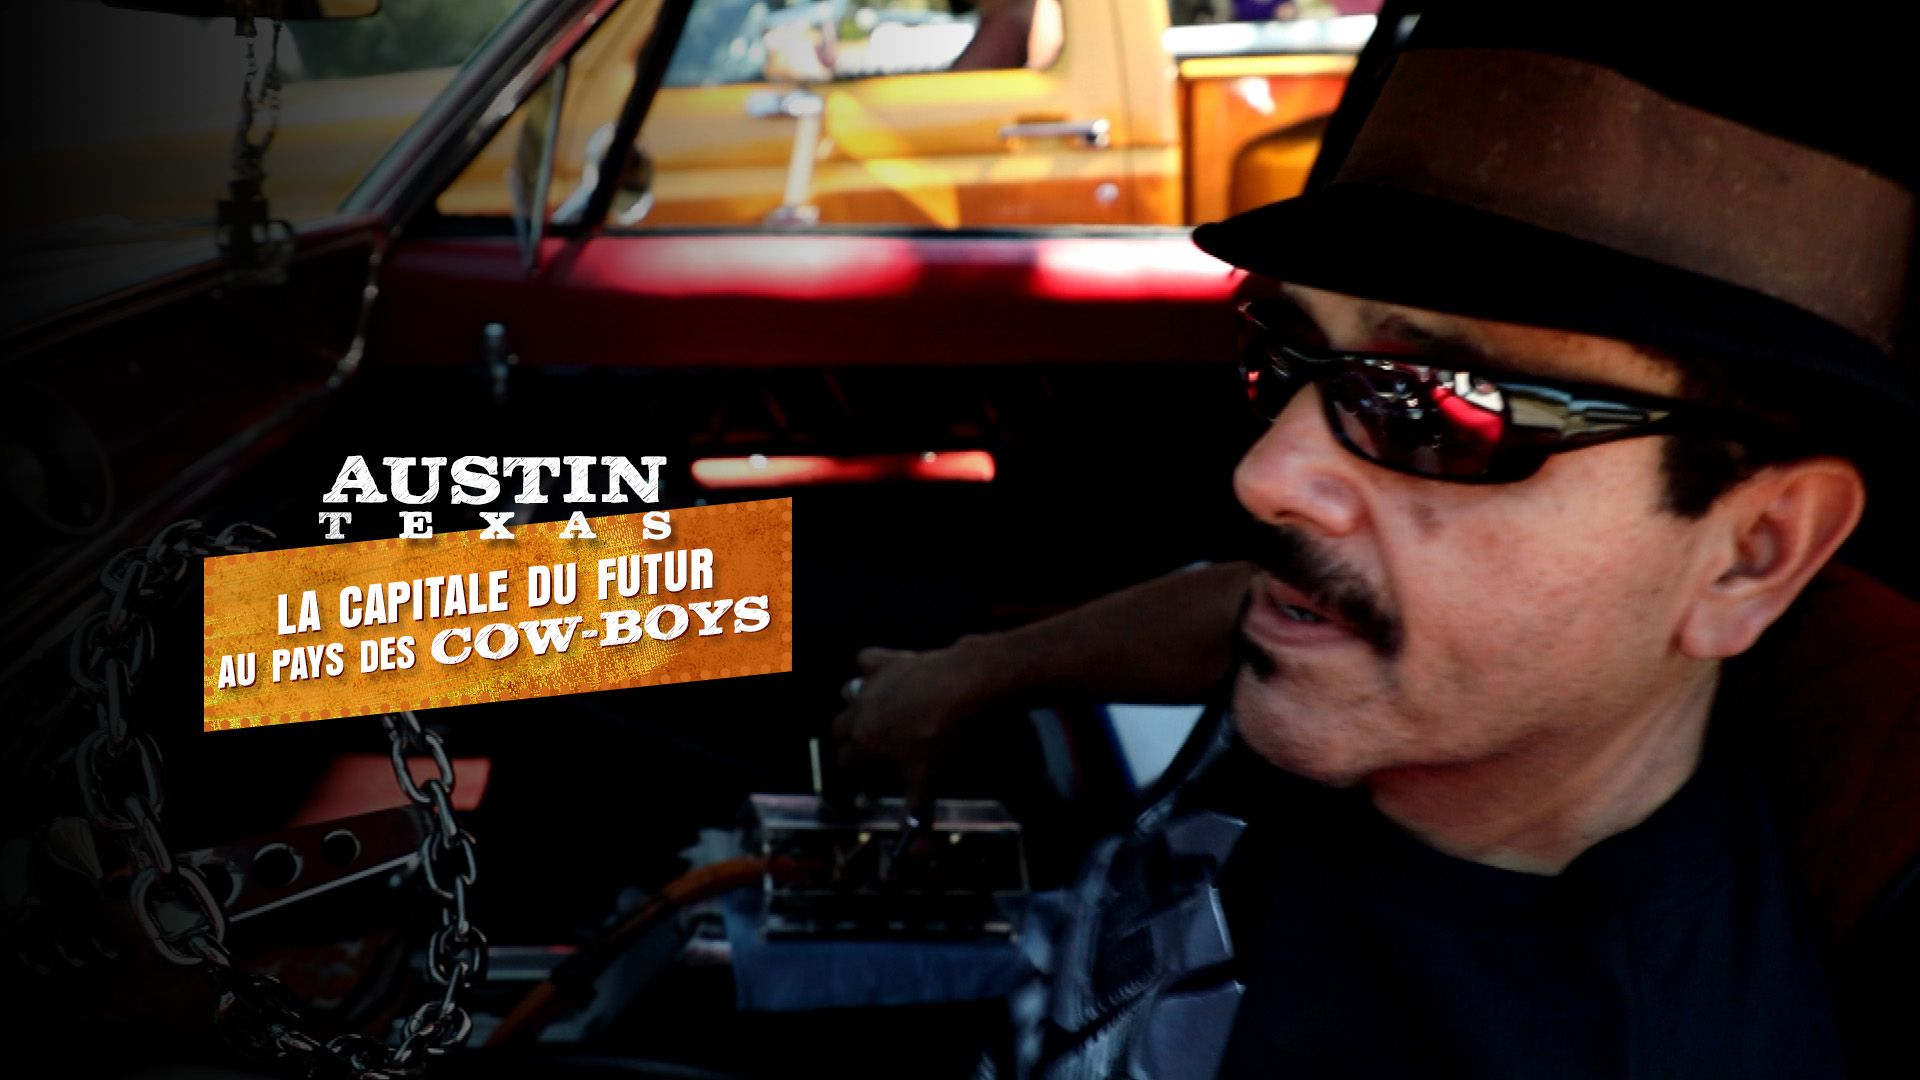 Austin (Texas), la capitale du futur au pays des cow-boys